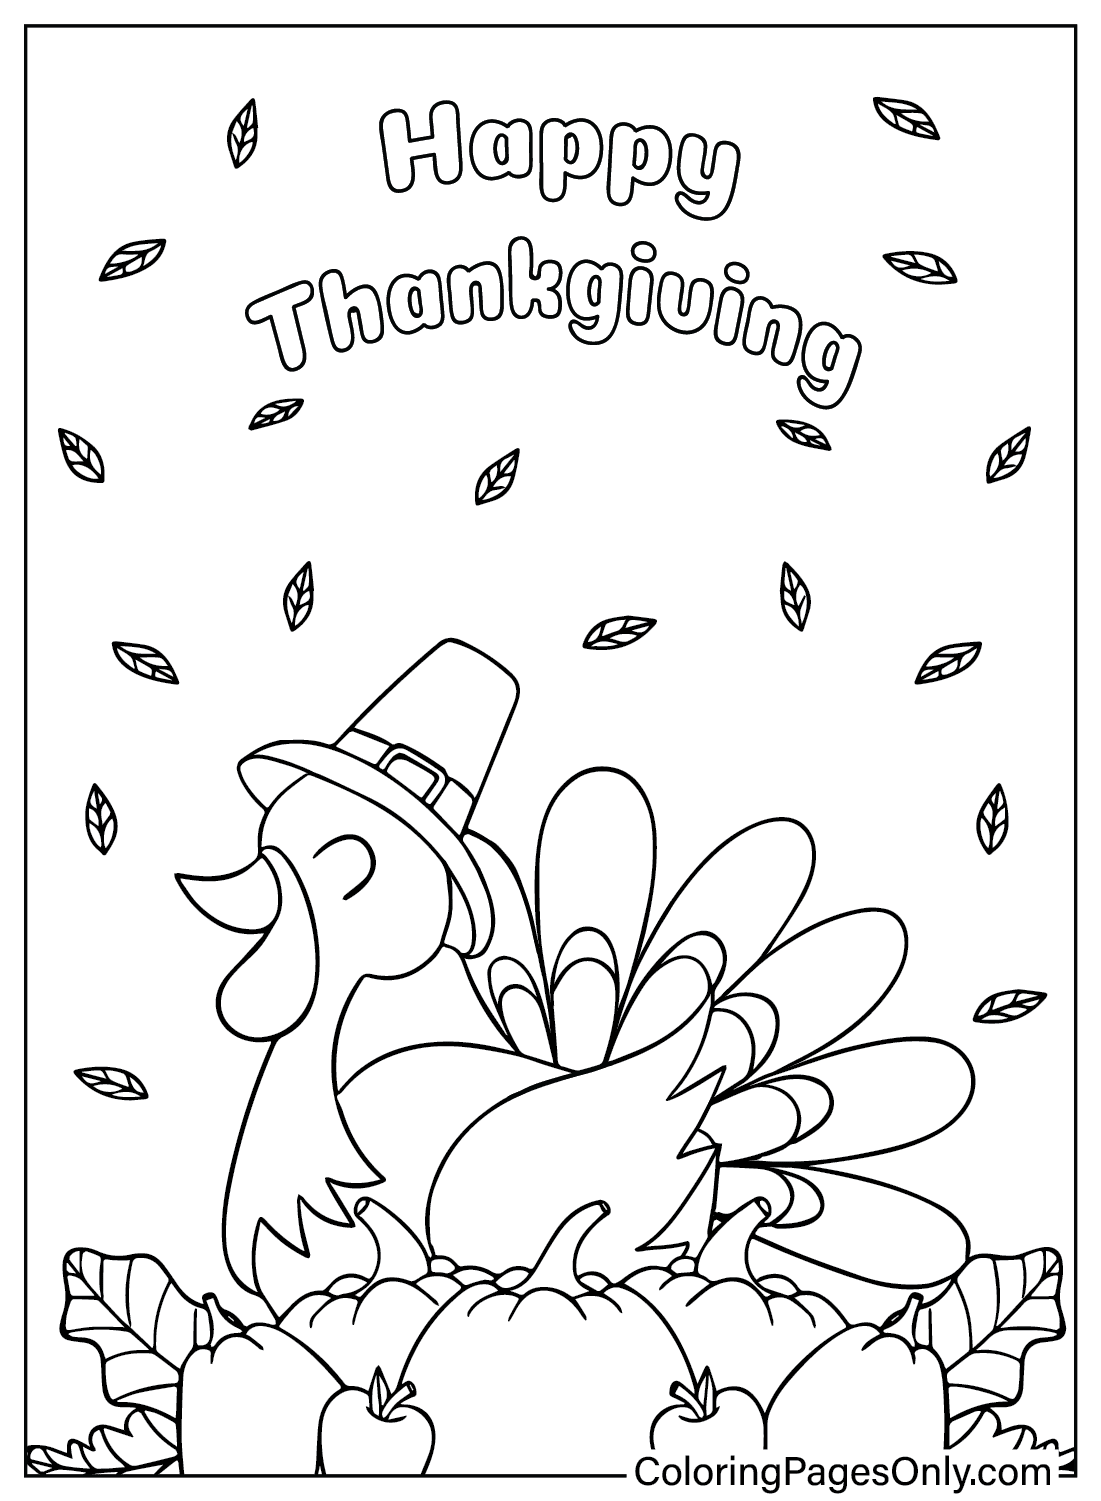 Disegni da colorare Turchia del Ringraziamento